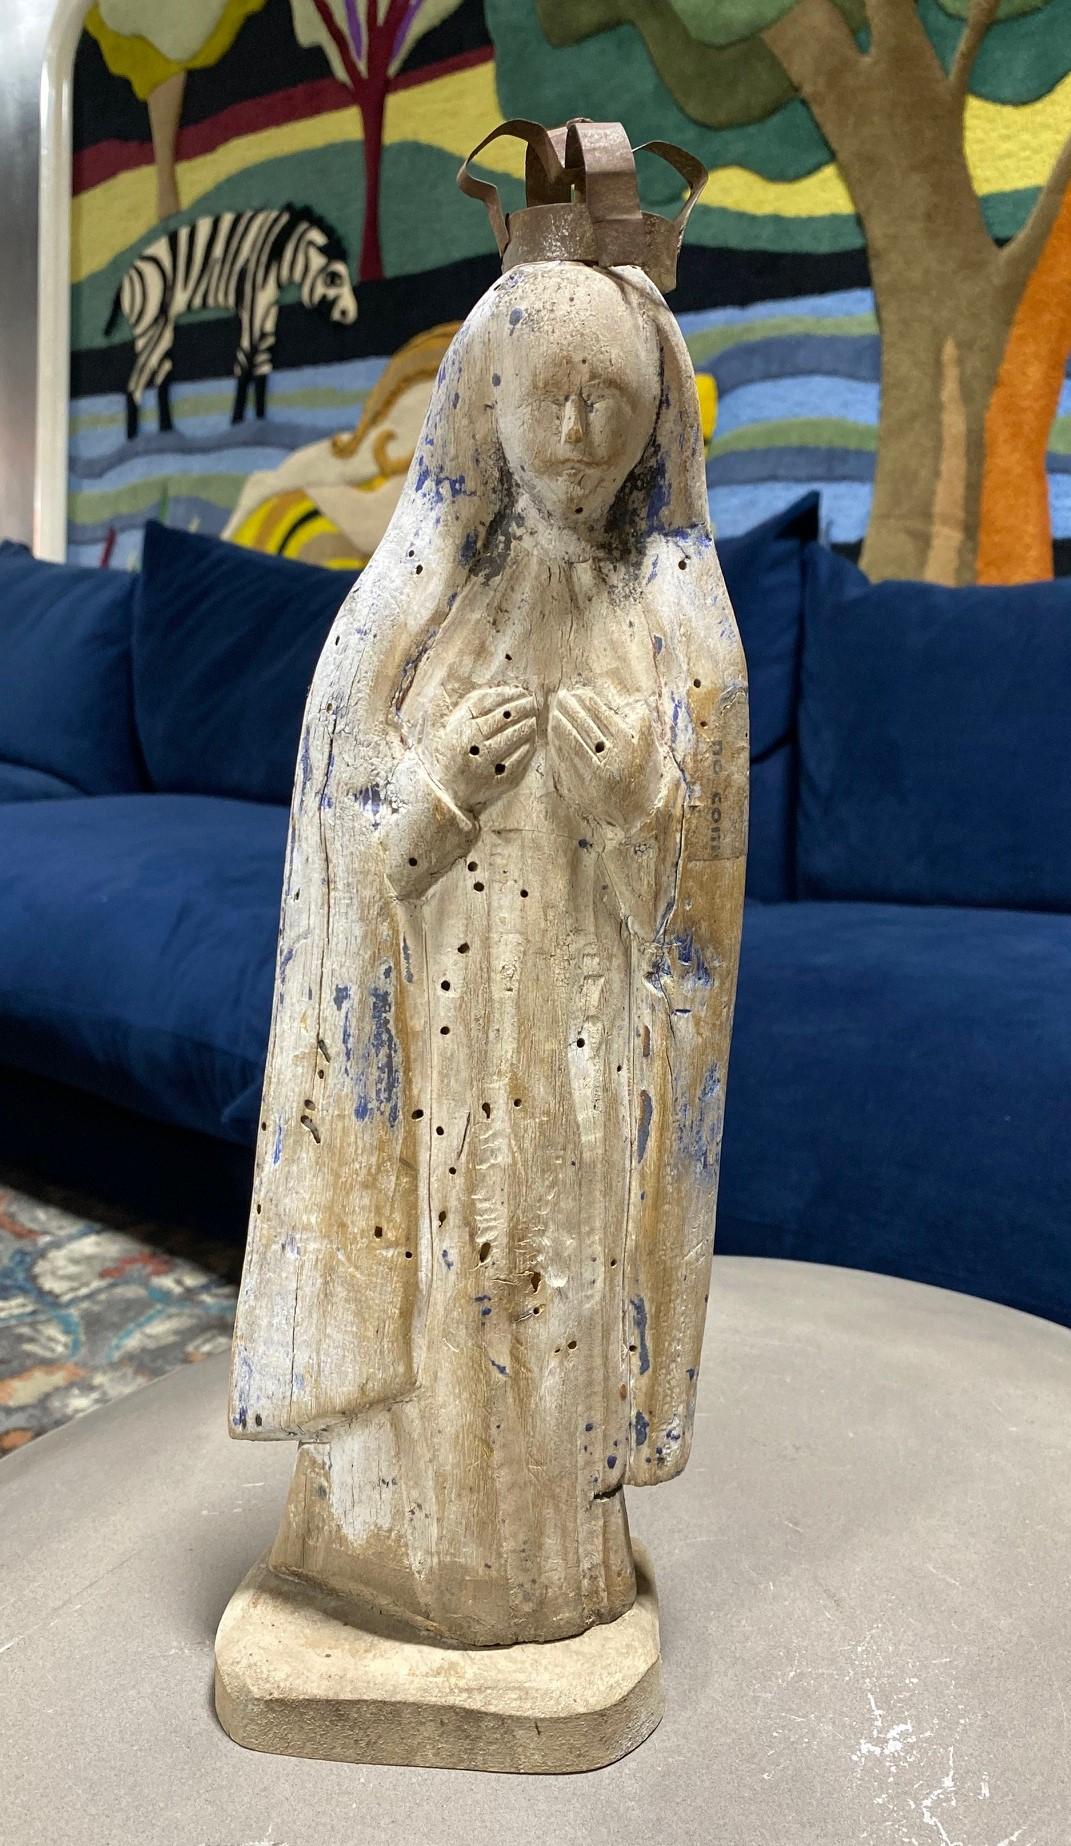 Eine schöne handgeschnitzte Holz Santo der Madonna, Maria Mutter von Christus. 

Das Stück zeigt deutliche Anzeichen von Verwitterung, Gebrauch und Alter und stand wahrscheinlich einige Jahre lang vor einer Kirche oder einem Schrein. Die Farbe ist